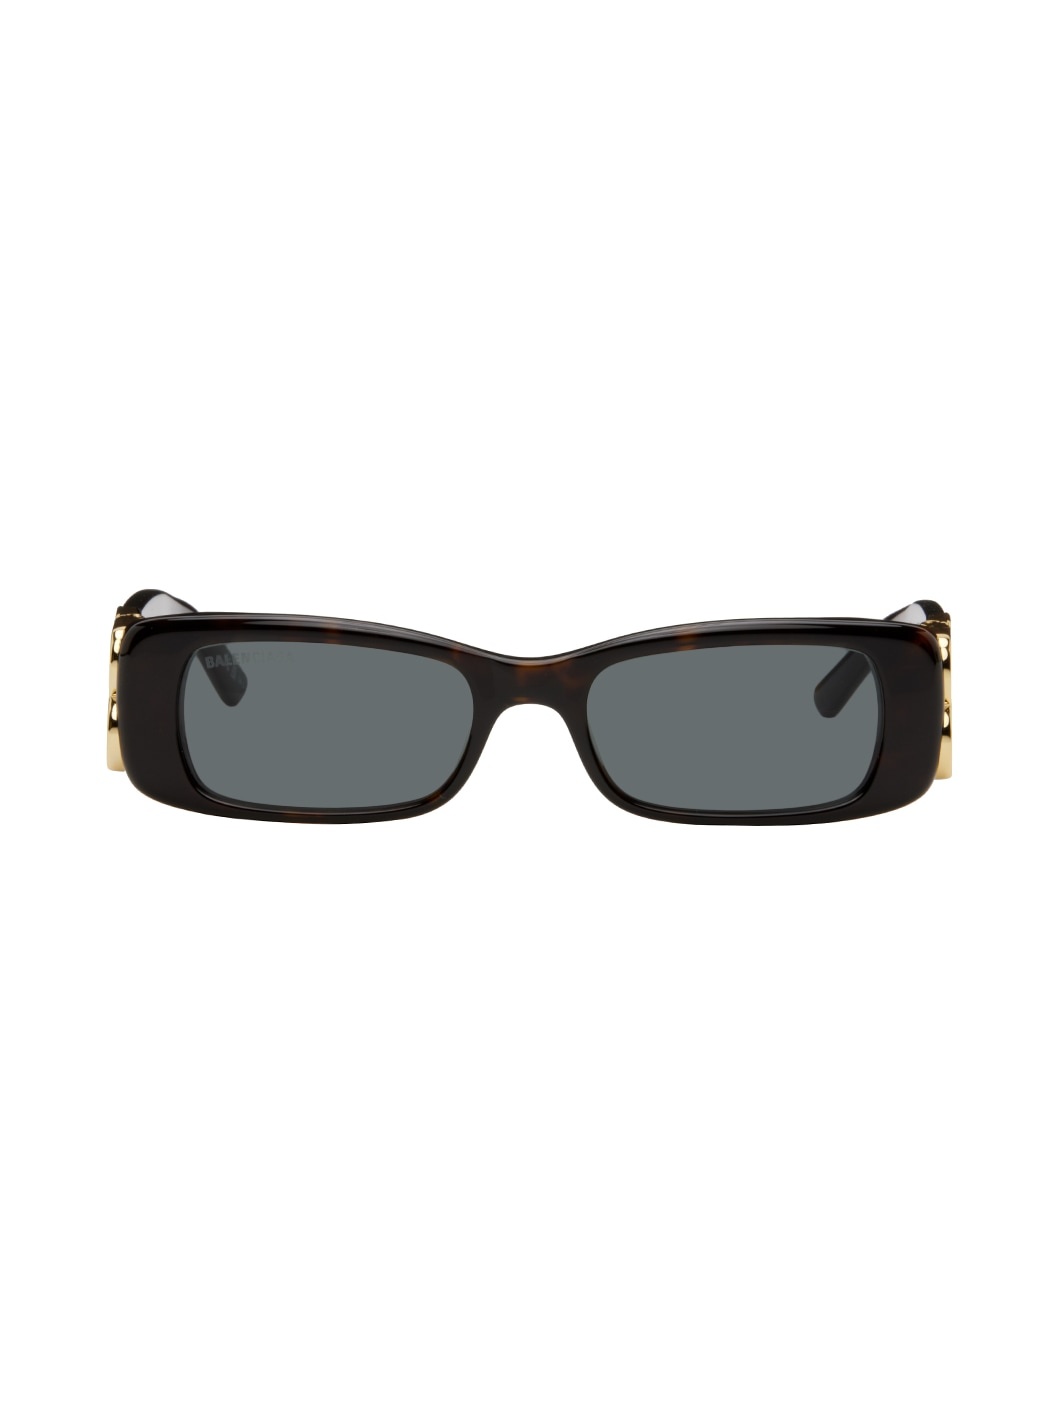 Tortoiseshell Dynasty Sunglasses - 1